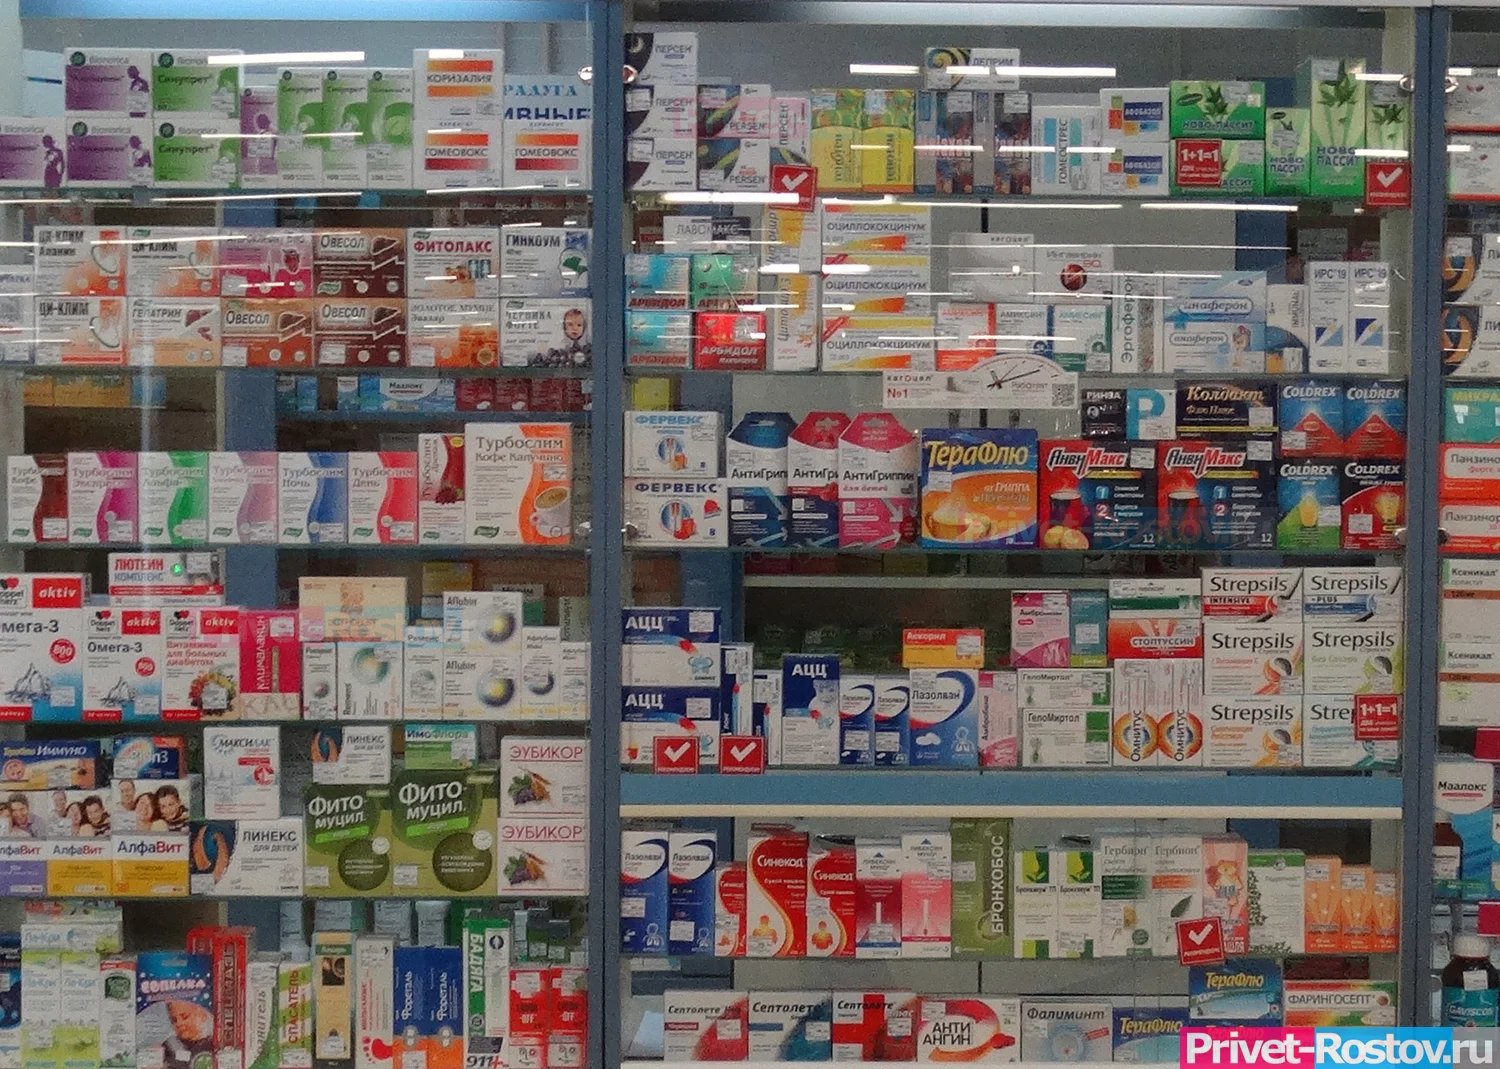 Зоозащитница разгромила аптеку в Таганроге, из-за продаж опиоидных препаратов без рецепта